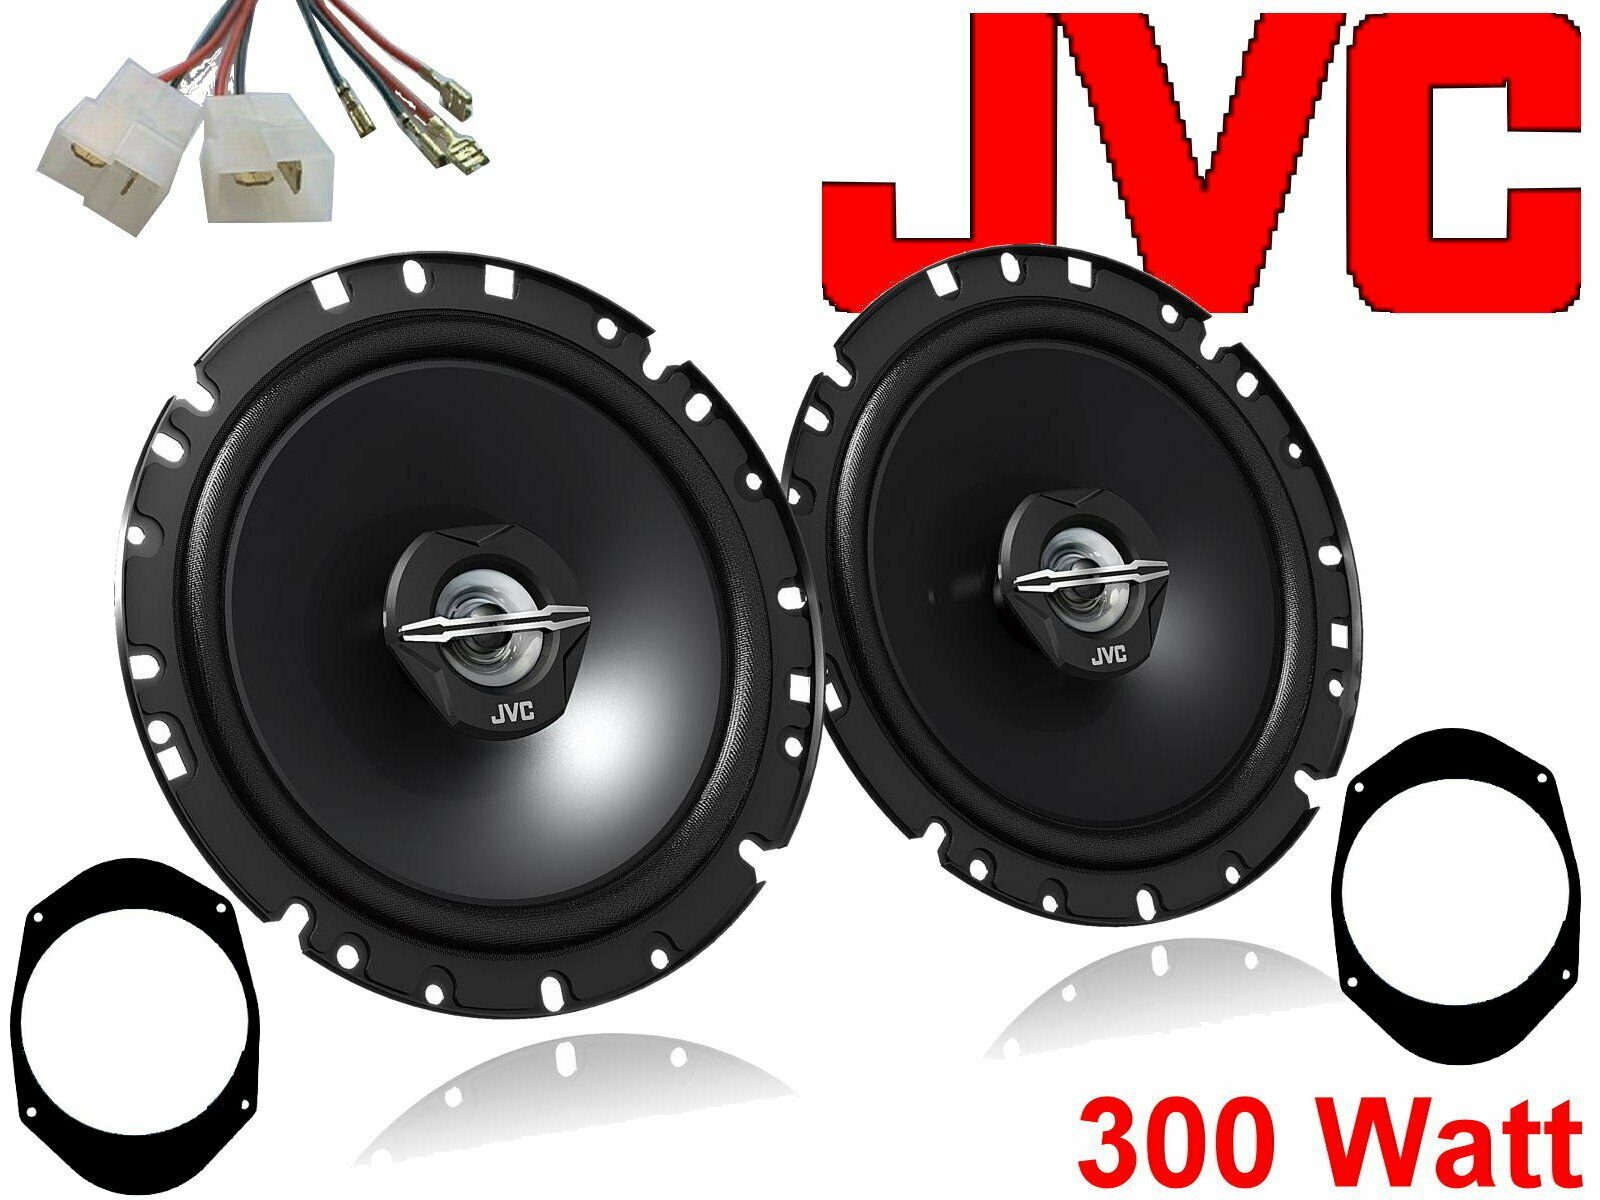 DSX JVC 300 W passend für Ford Puma 97 - 01 Lautsprech Auto-Lautsprecher (30 W)